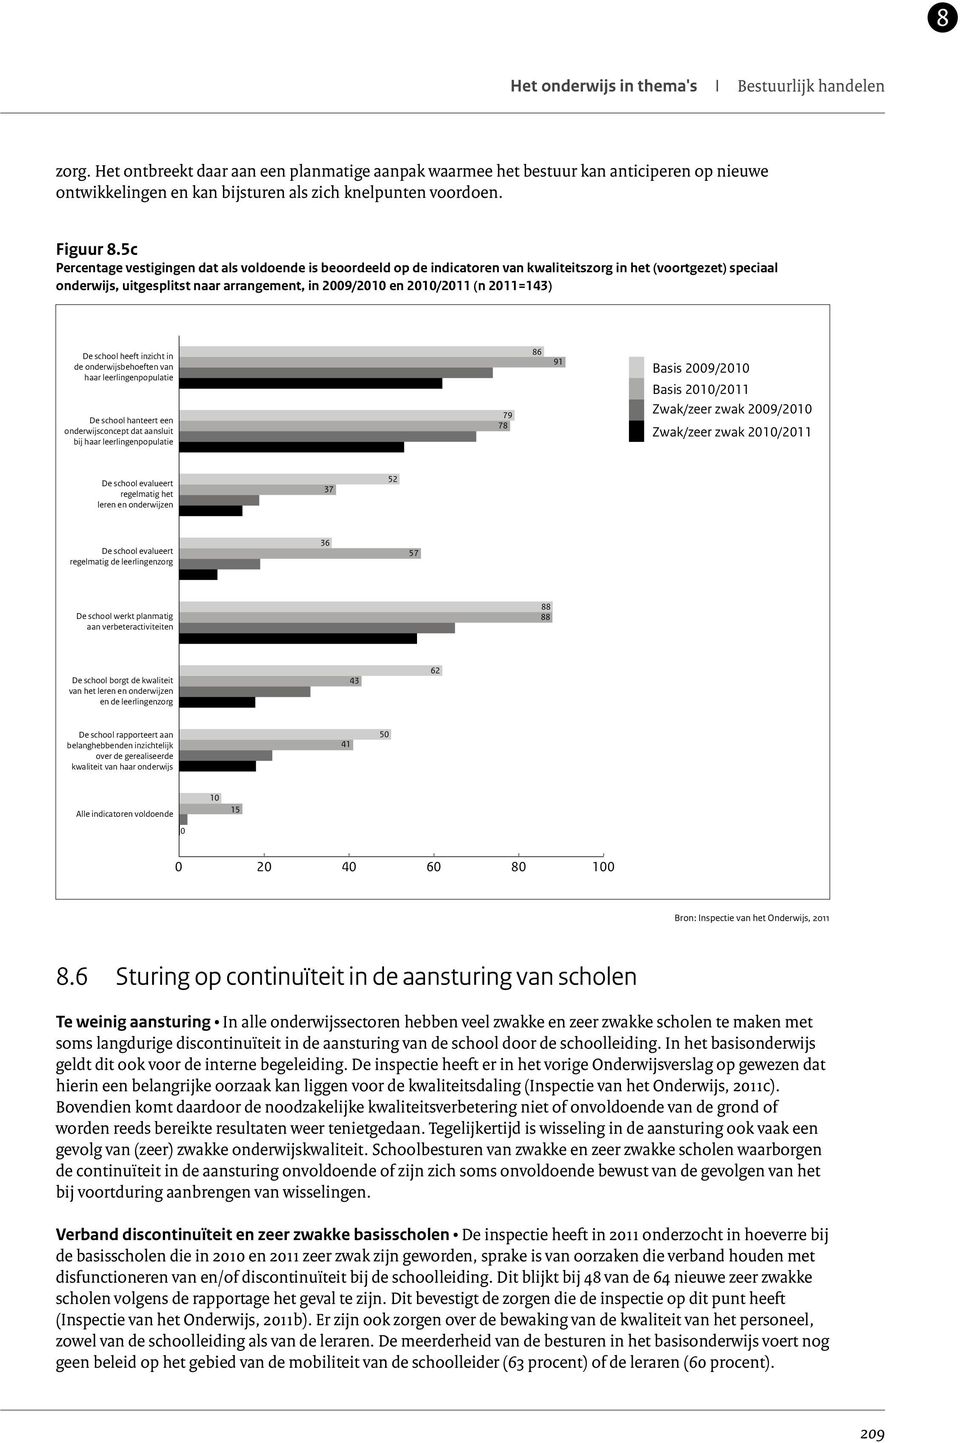 5c Percentage vestigingen dat als voldoende is beoordeeld op de indicatoren van kwaliteitszorg in het (voortgezet) speciaal onderwijs, uitgesplitst naar arrangement, in 2009/2010 en 2010/2011 (n